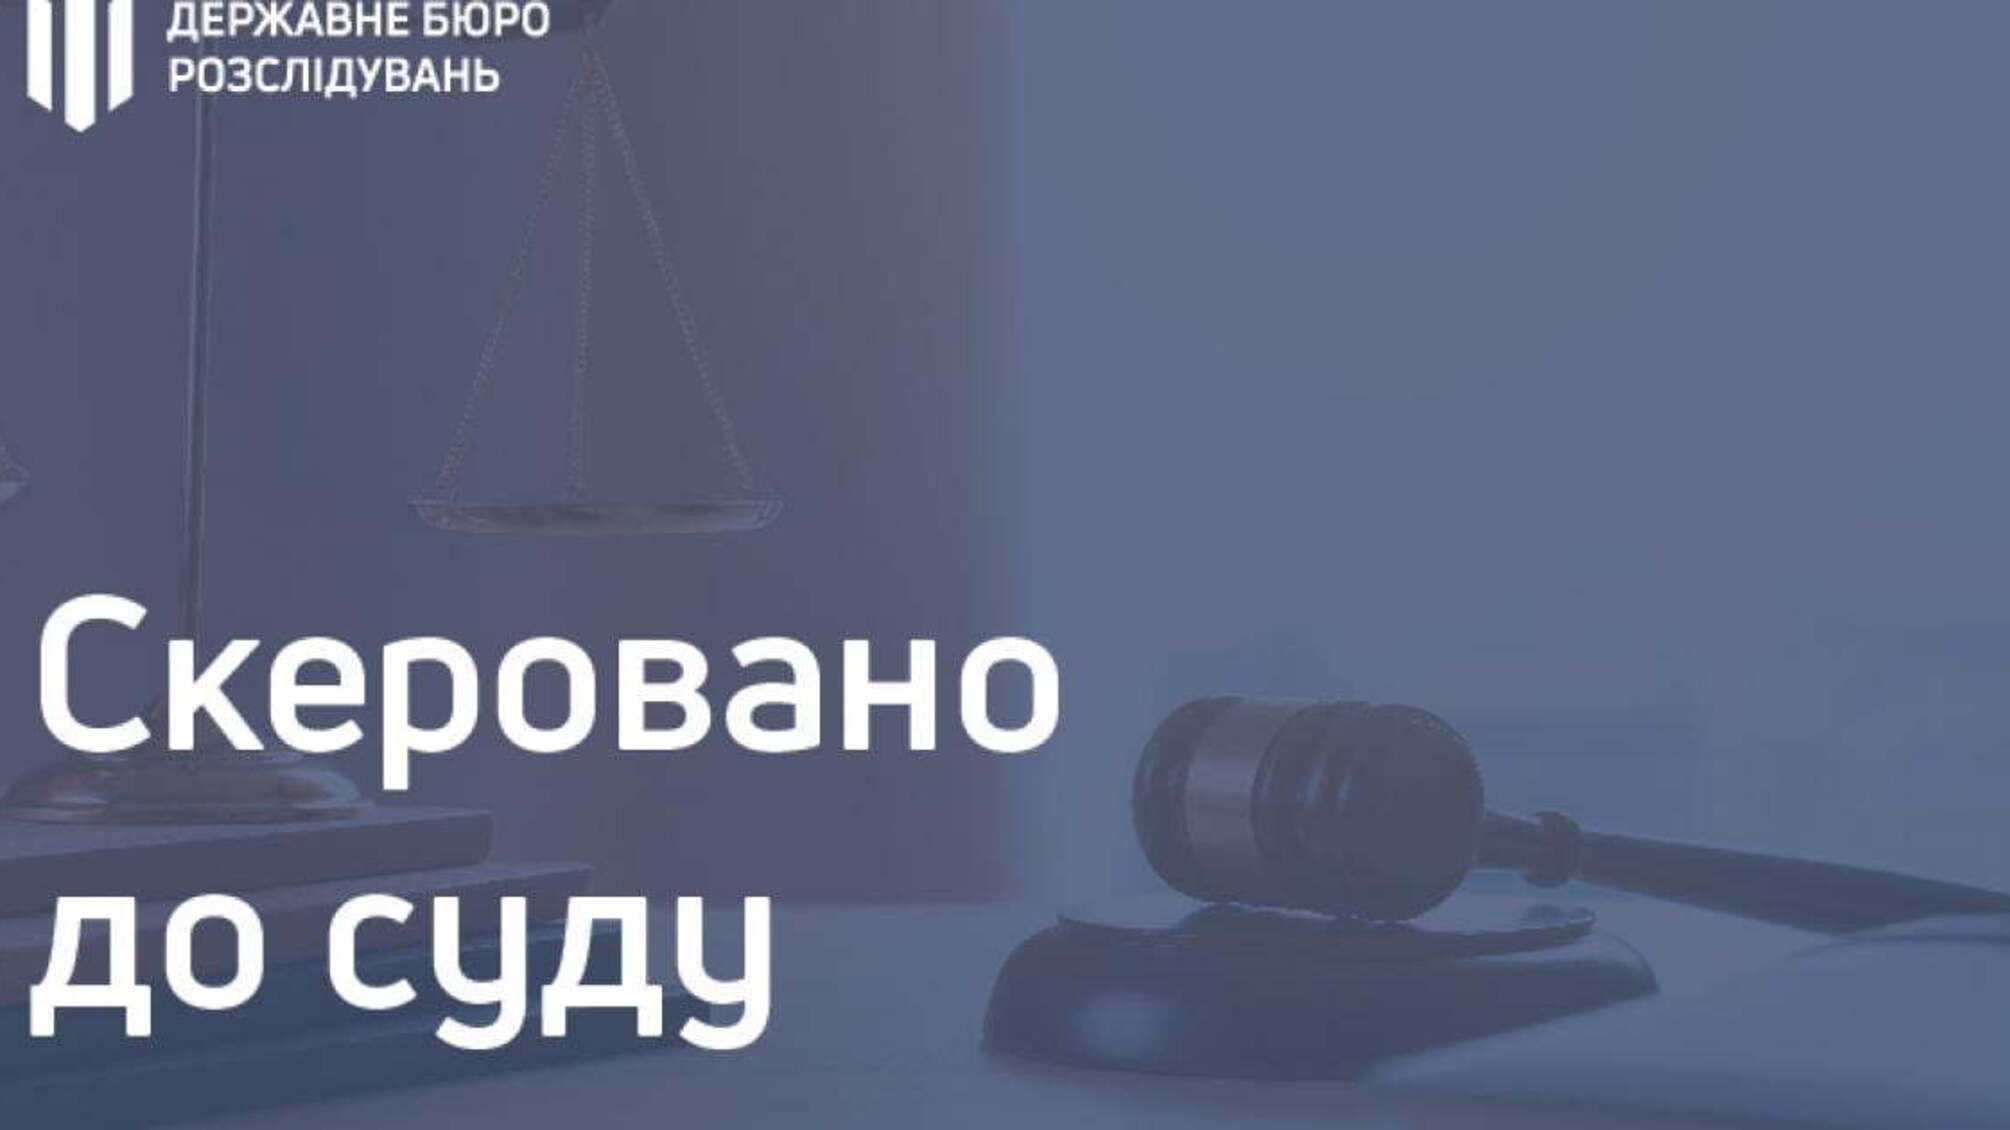 367 000 гривень збитків через незаконну рубку дерев – двоє працівників «Крижопільського лісового господарства»  постануть перед судом